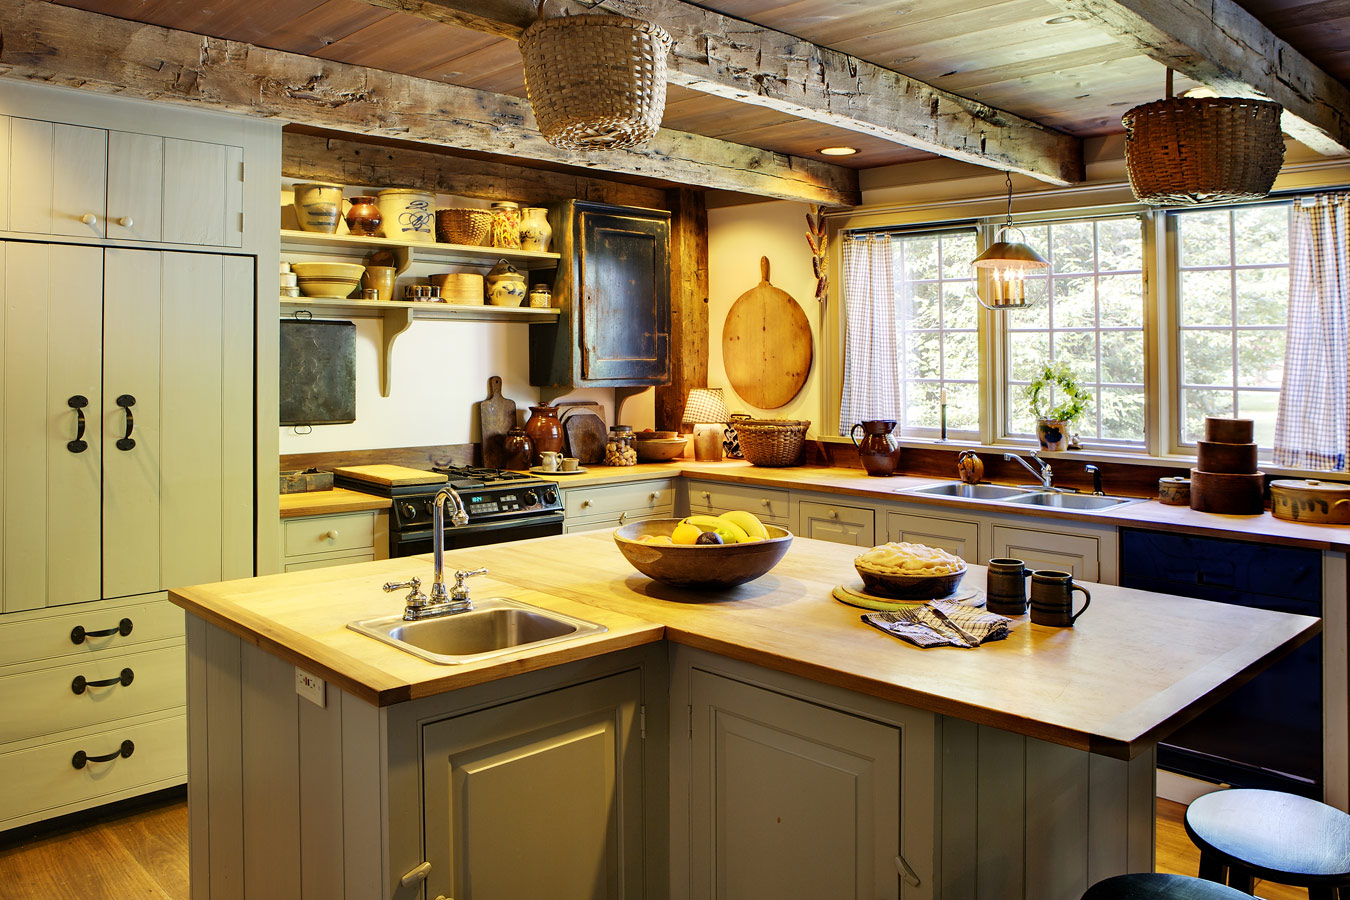 Landelijke keuken met houten balken - keukenkasten schilderen